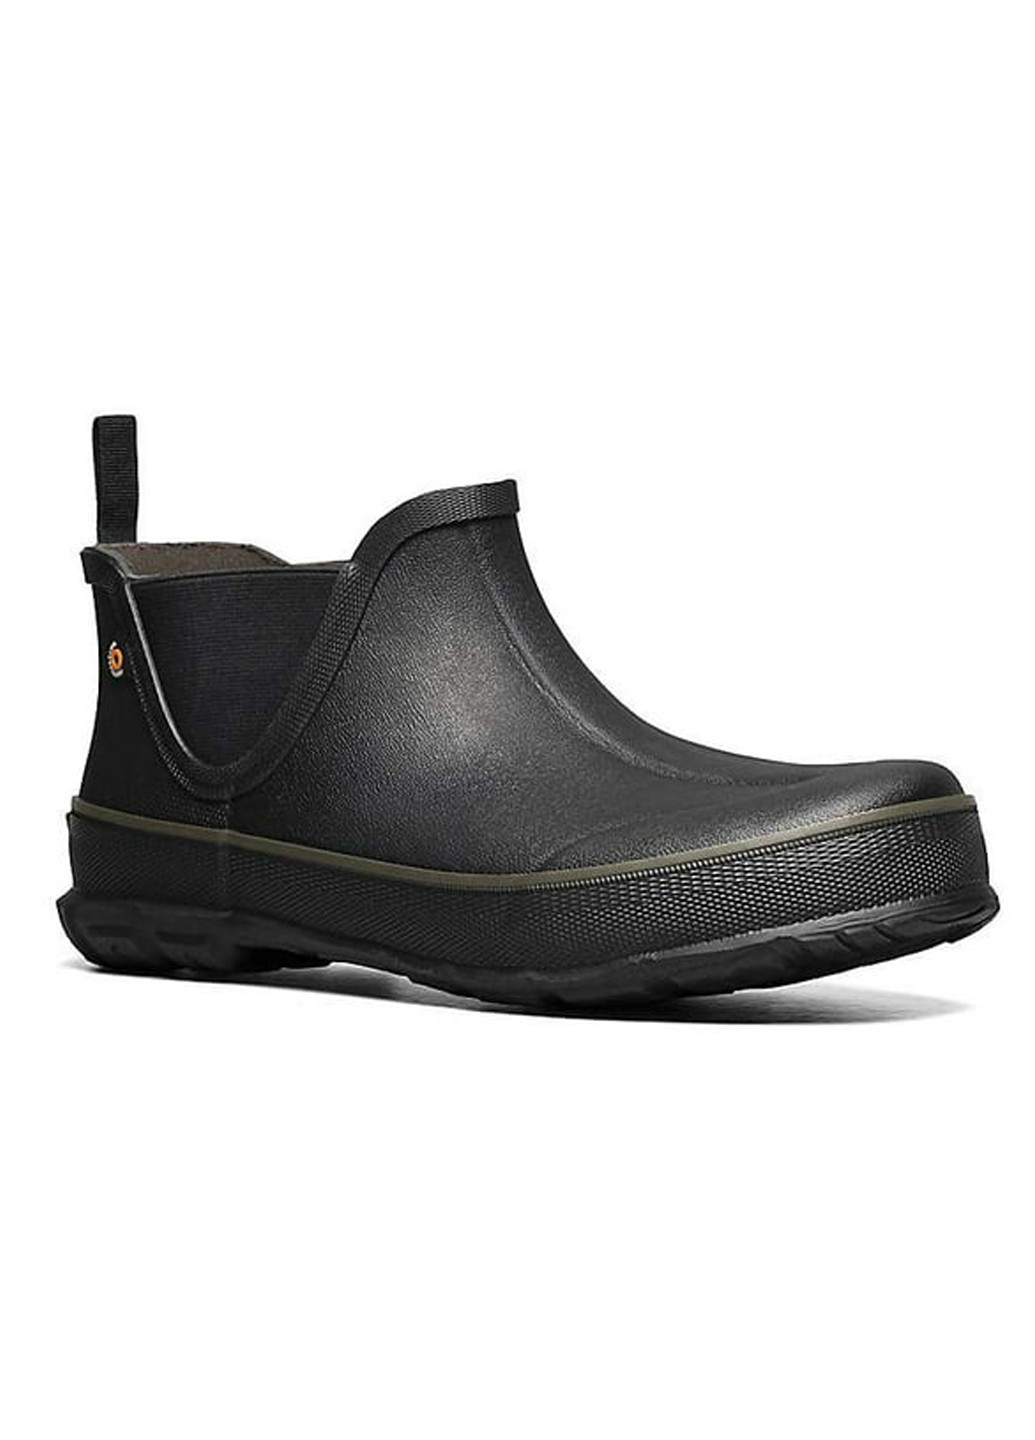 Черные резиновые ботинки Bogs